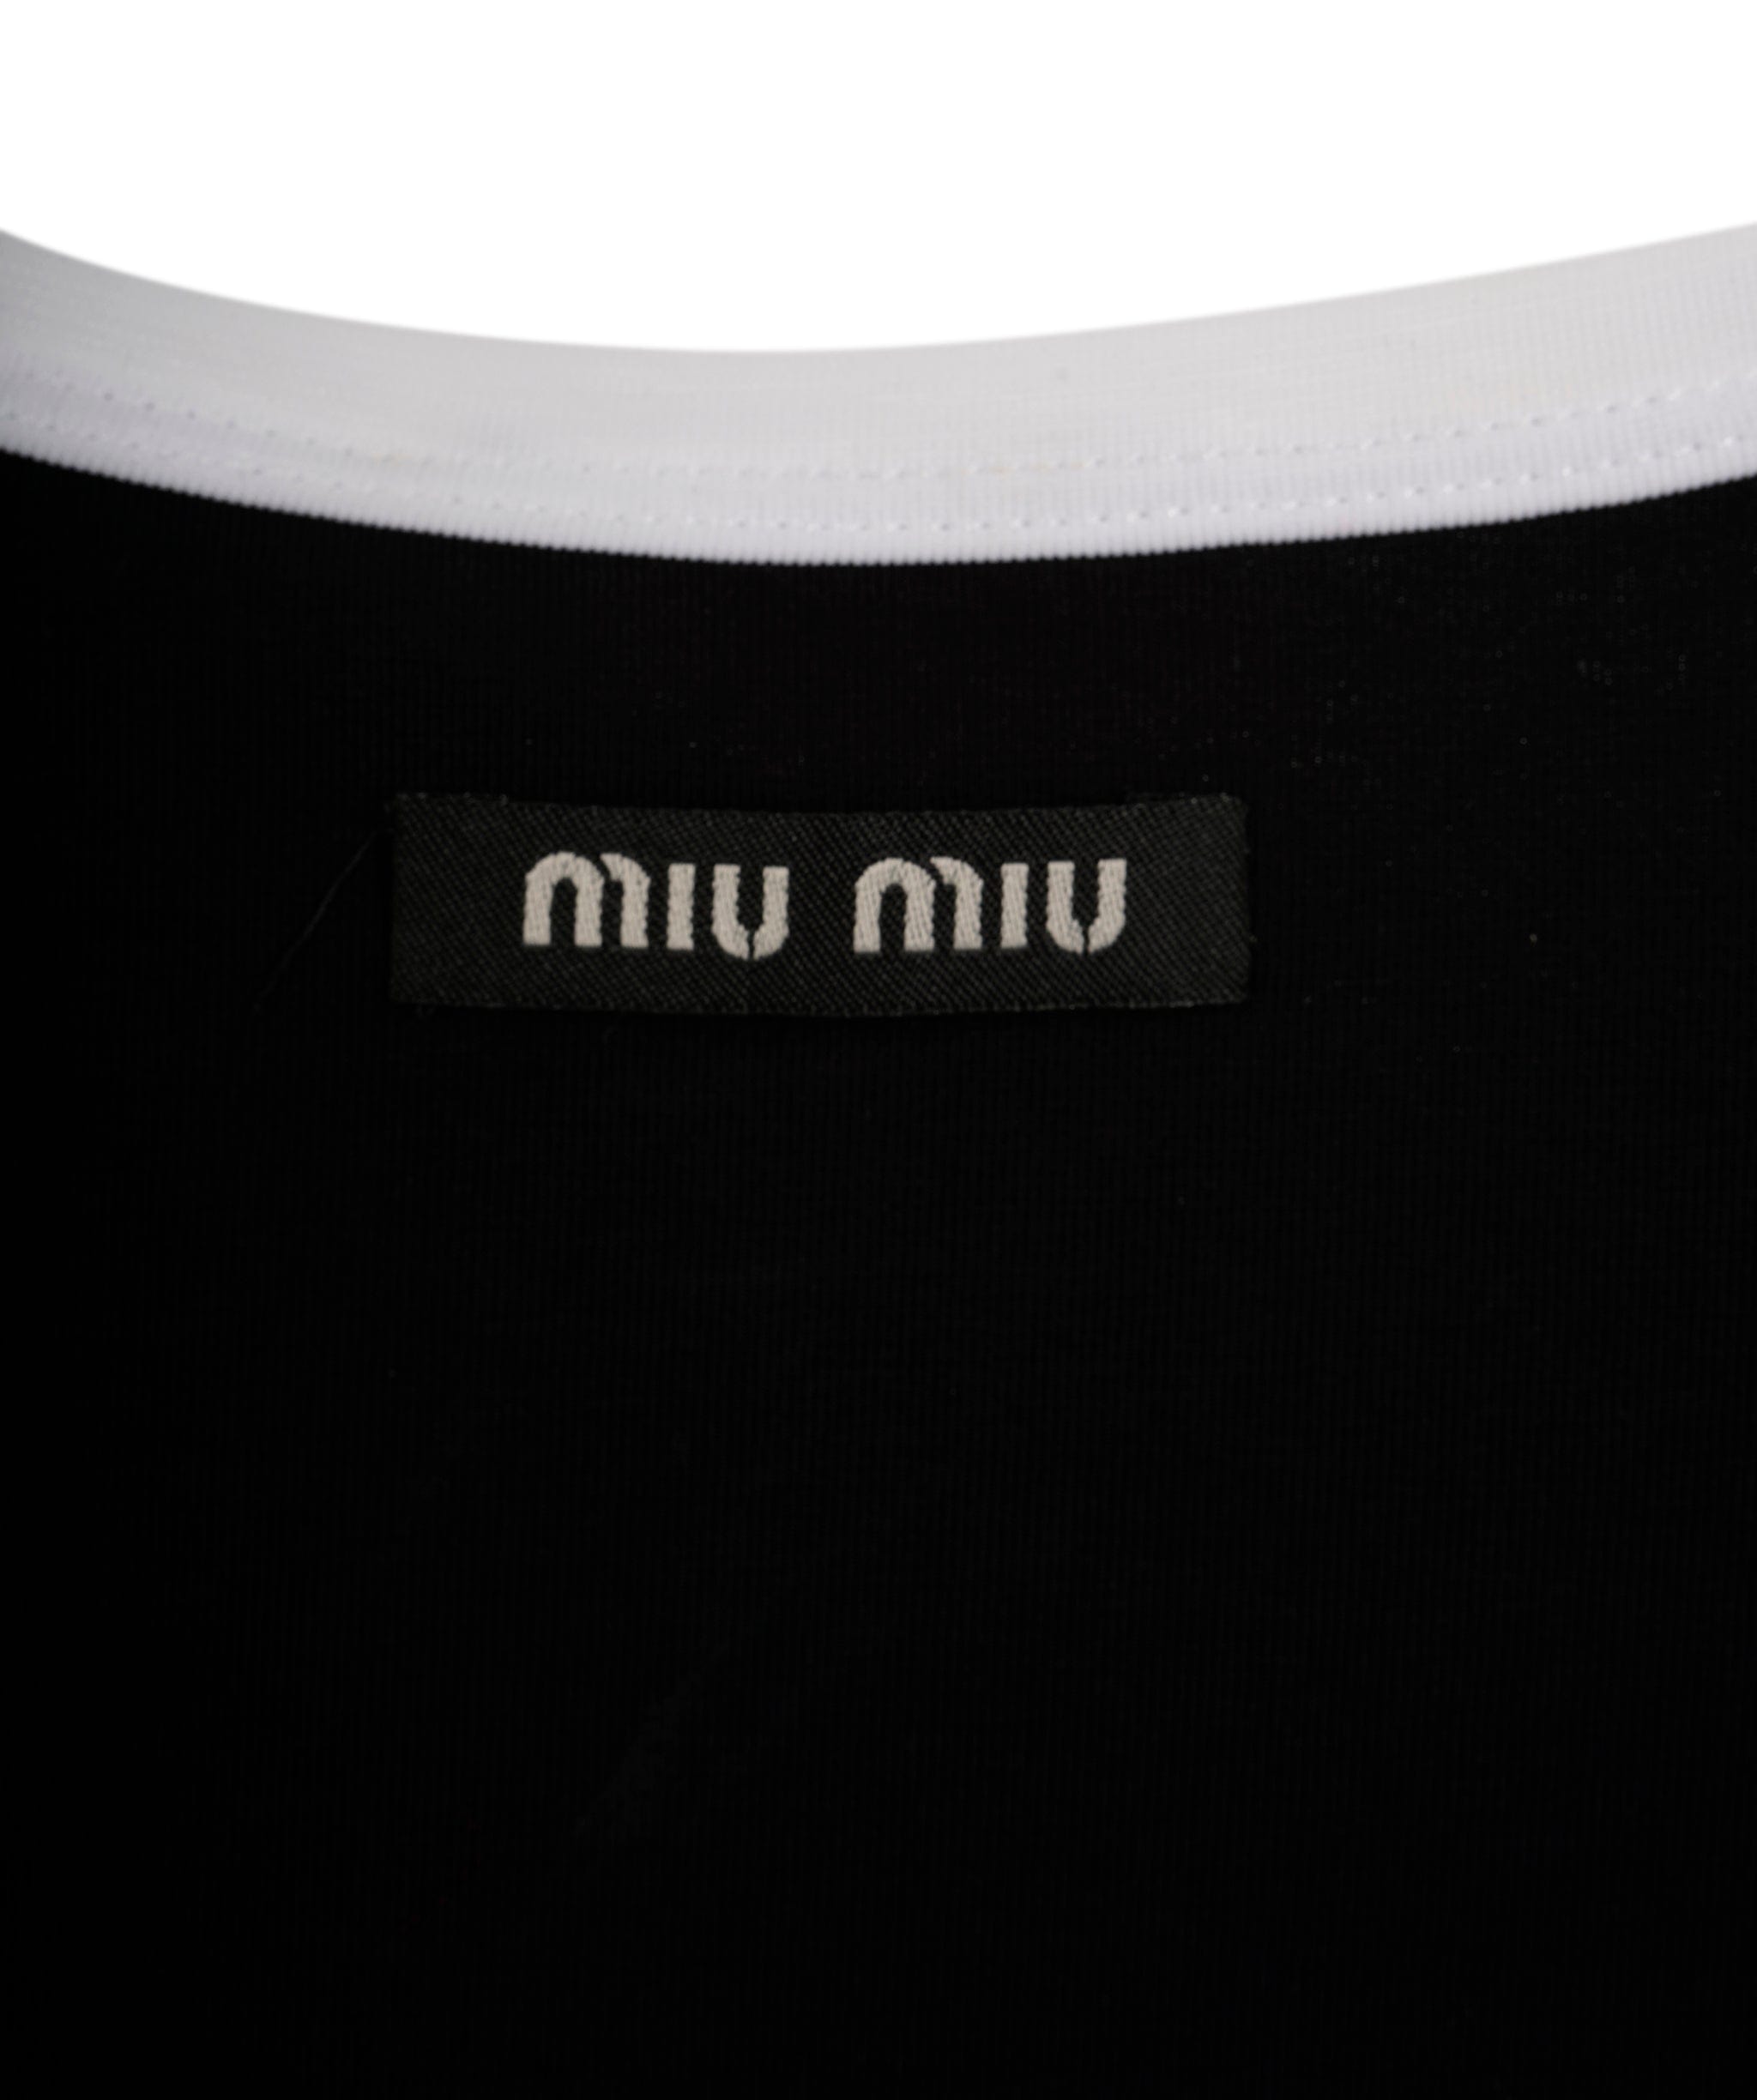 Miumiu Miu miu crop top black and white size small AGL2431